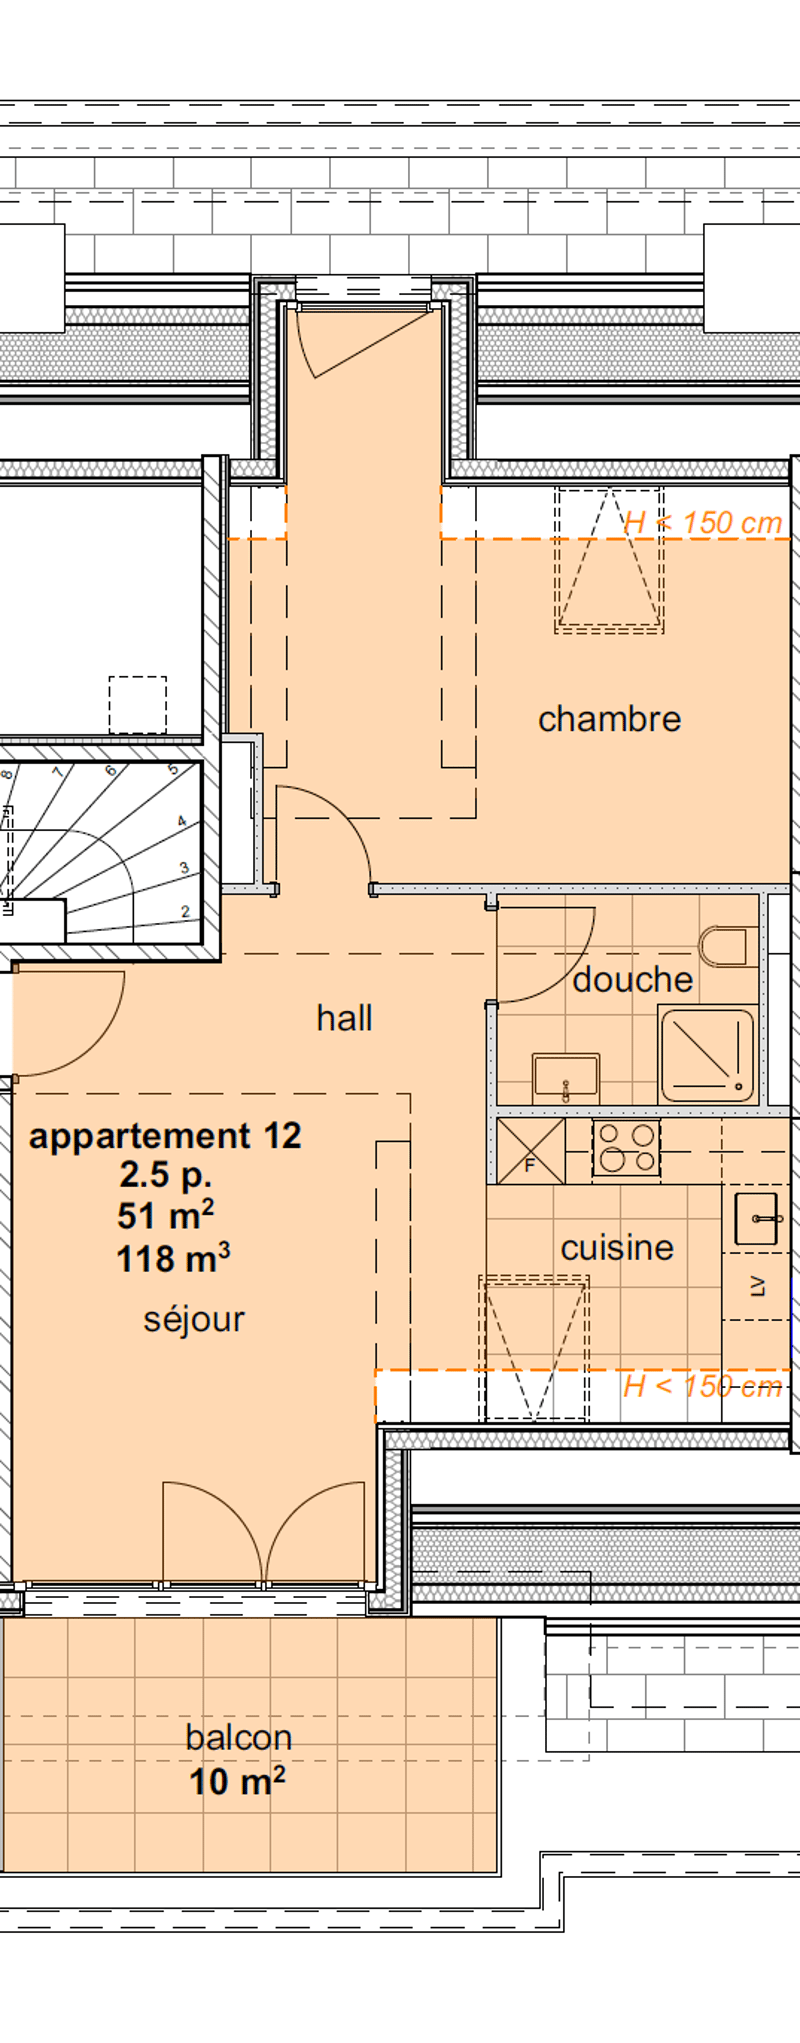 Appartements neufs de 1.5 pièces aux combles (3ème étage) - (centre) (2)